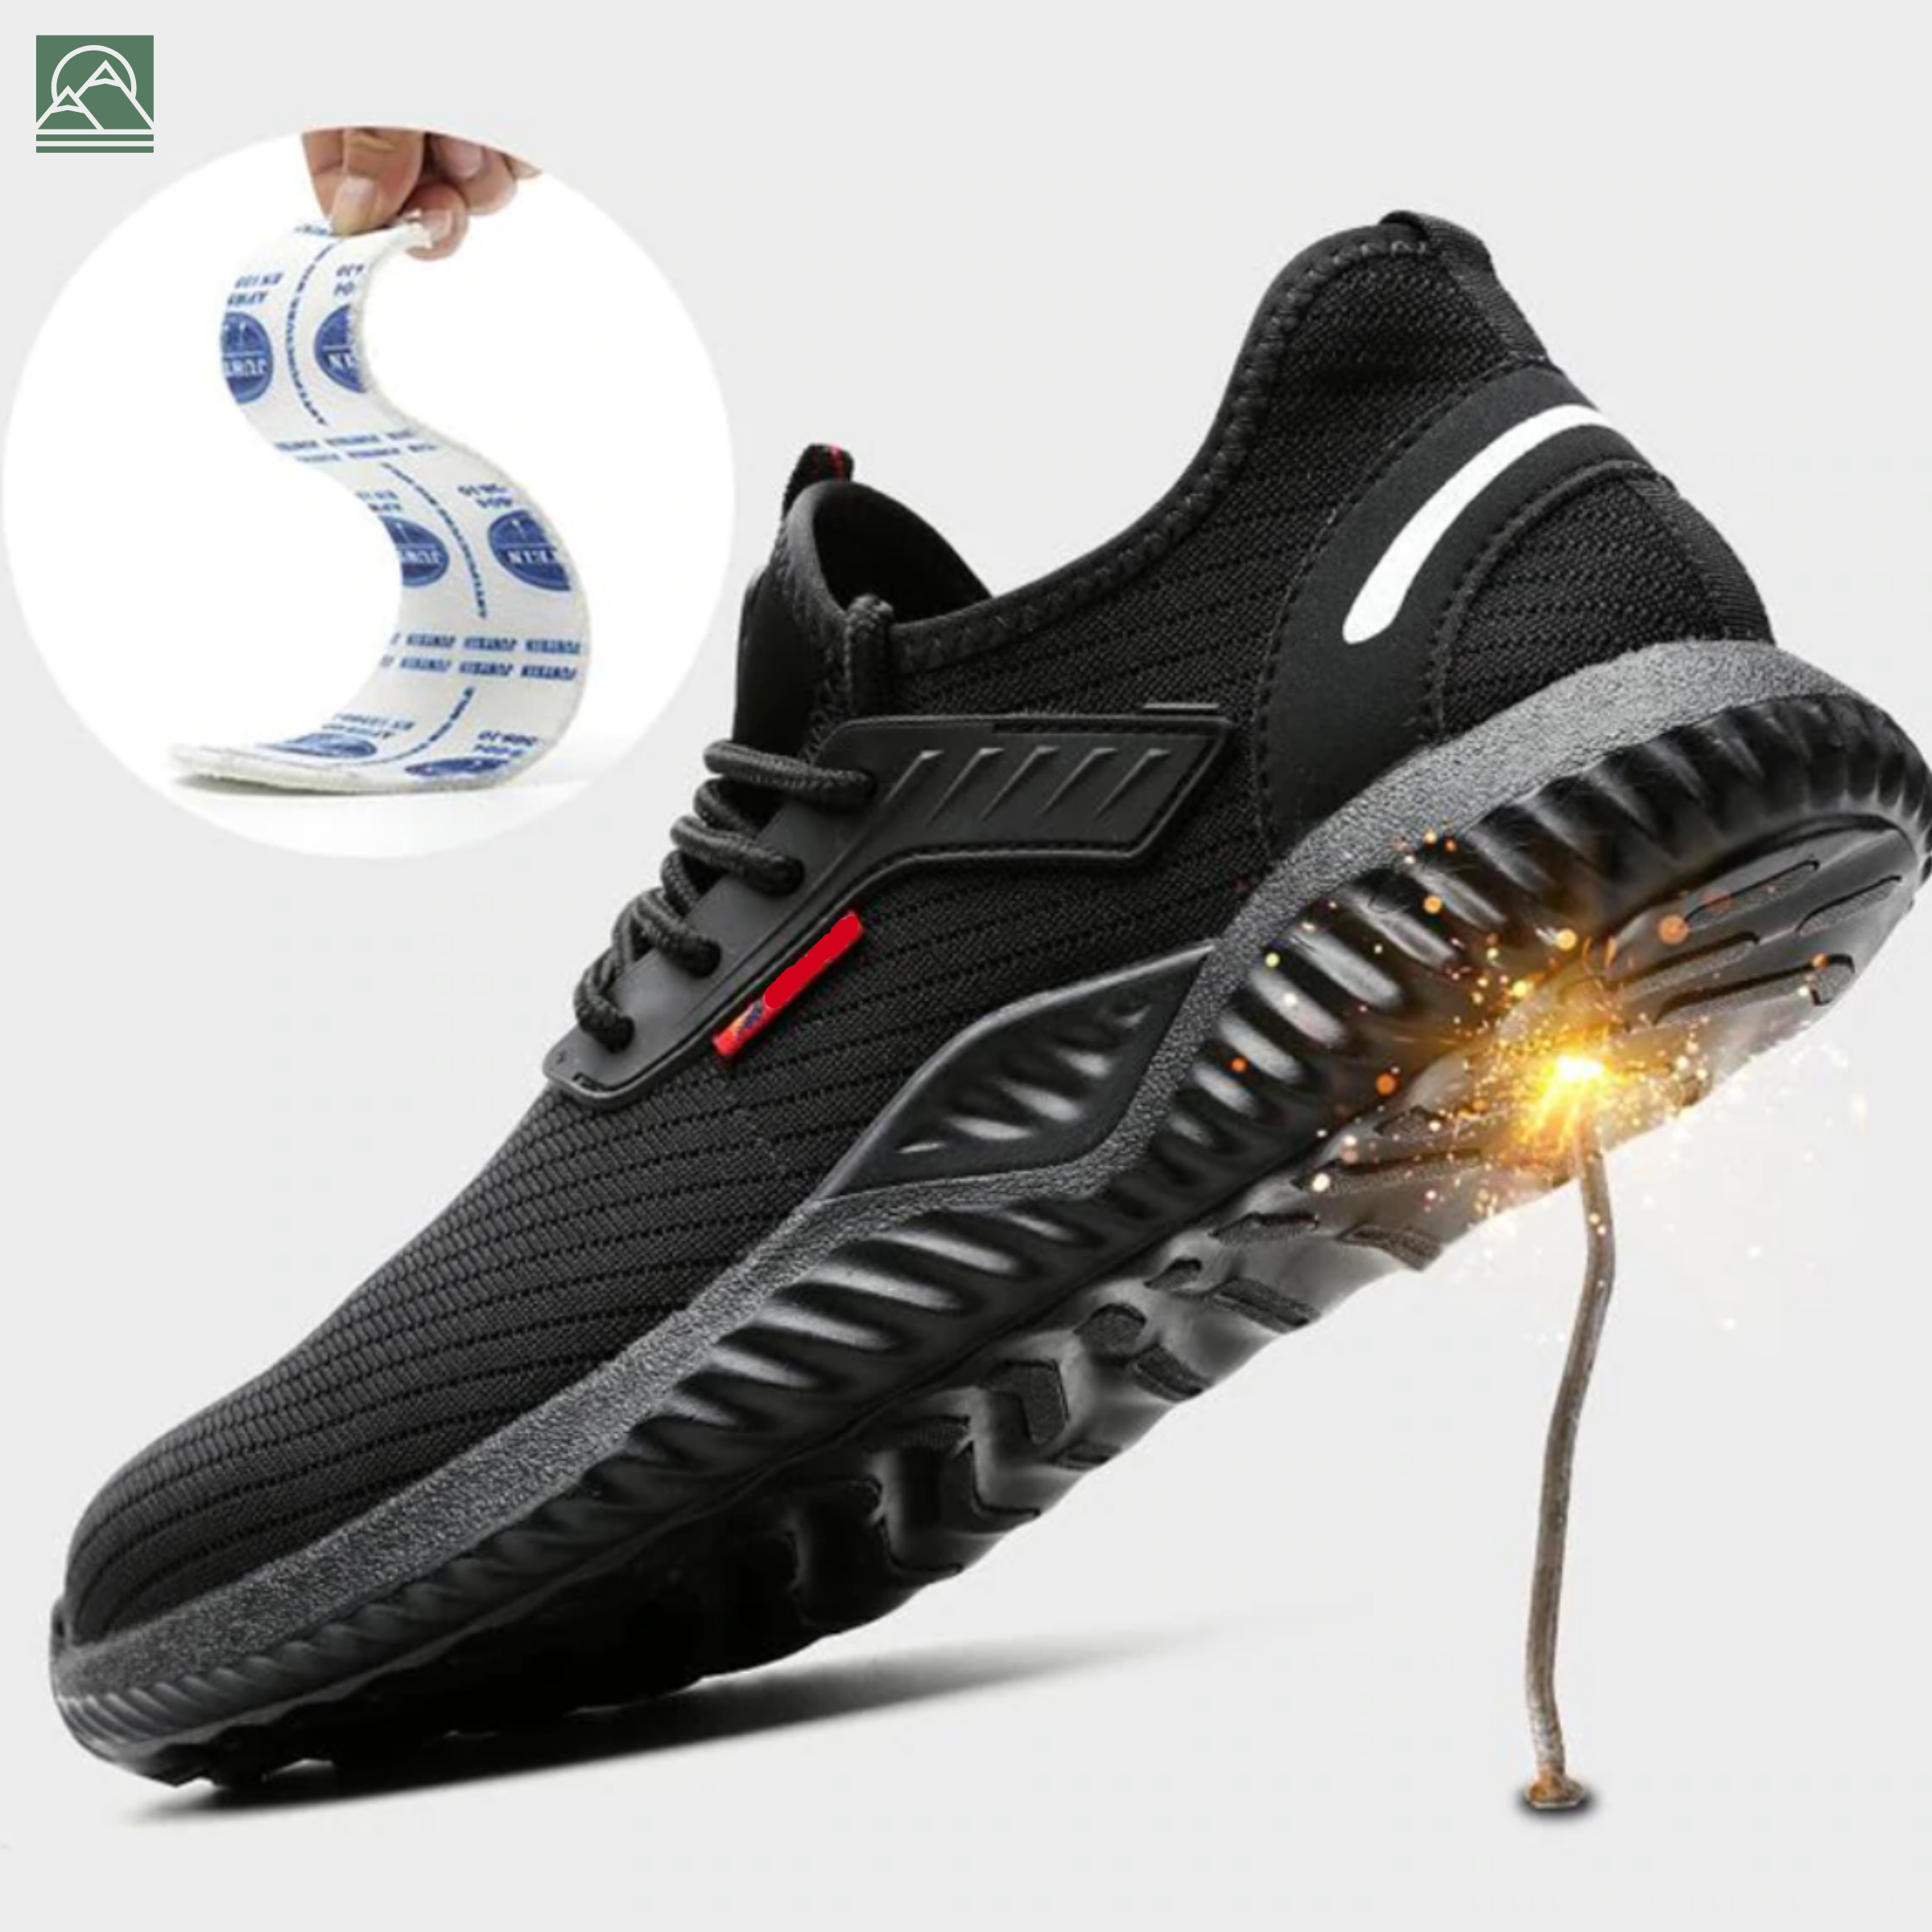 Chaussures de sécurité Homme Femme - Baskets Indestructibles - Ultra Solide à Coque